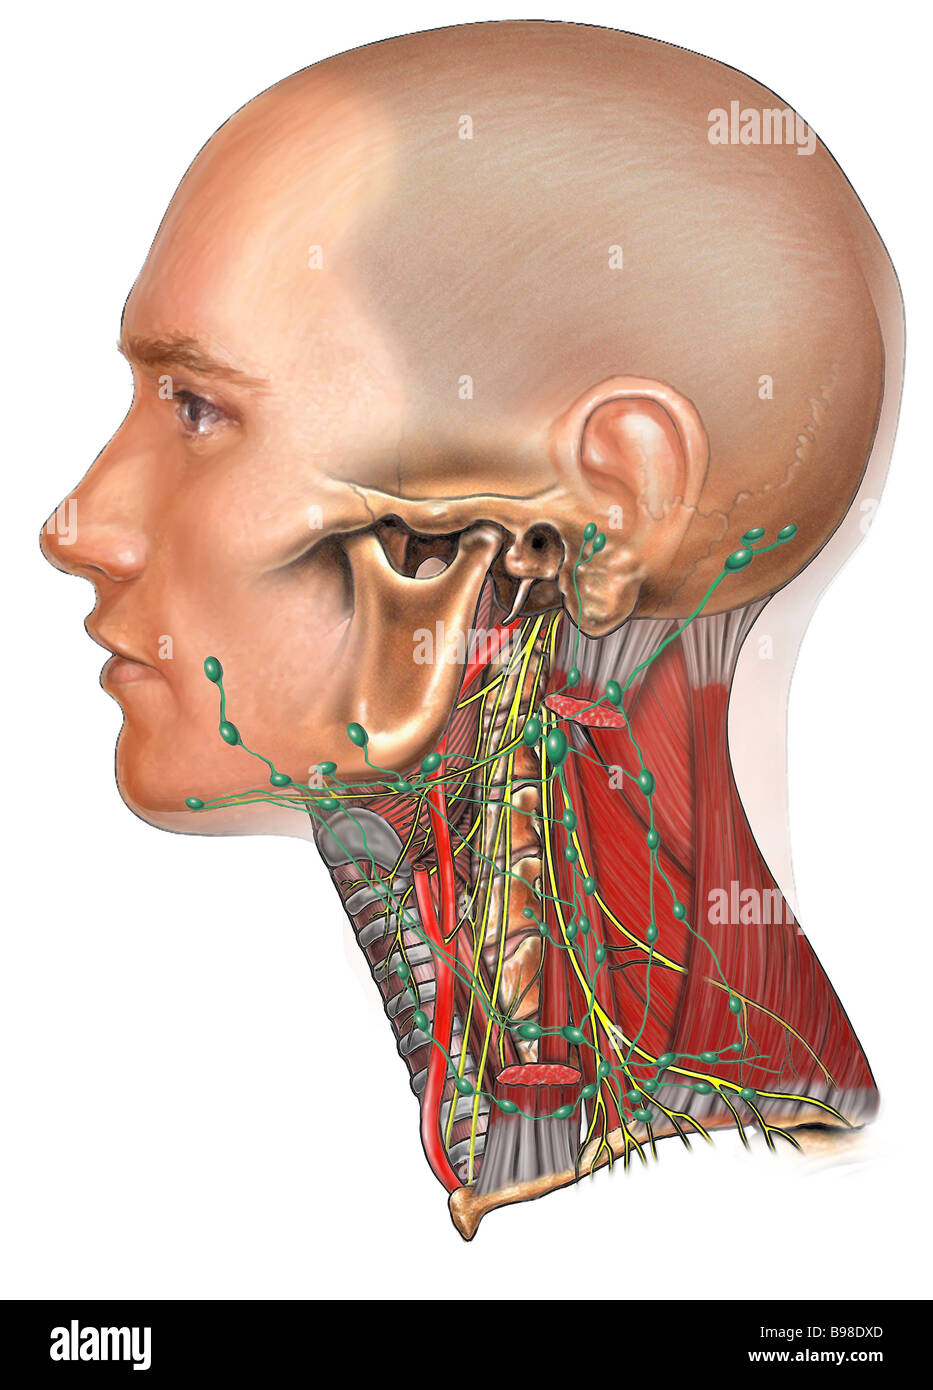 Linfonodi della testa e del collo Foto stock - Alamy